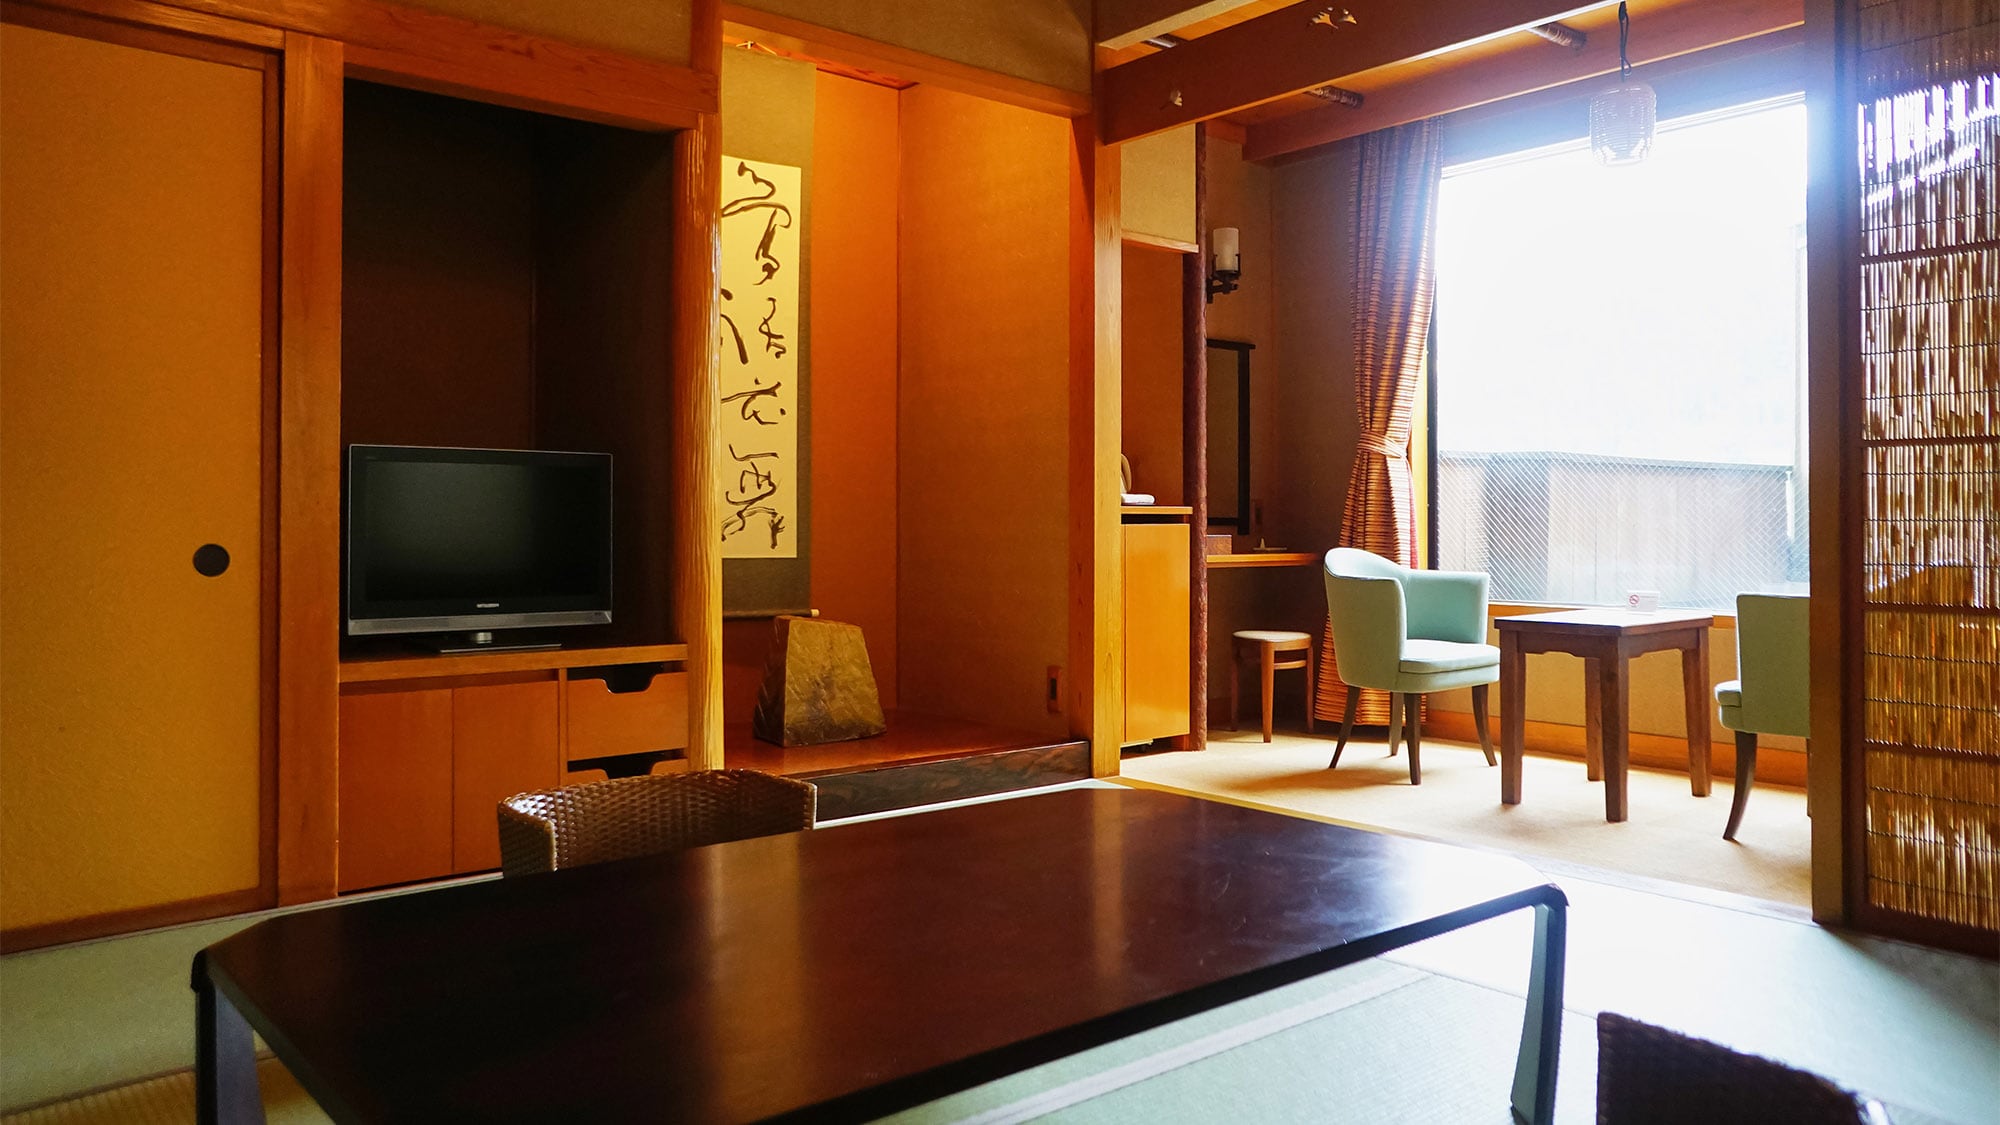 ・Japanese modern room, 10 tatami mats, no view